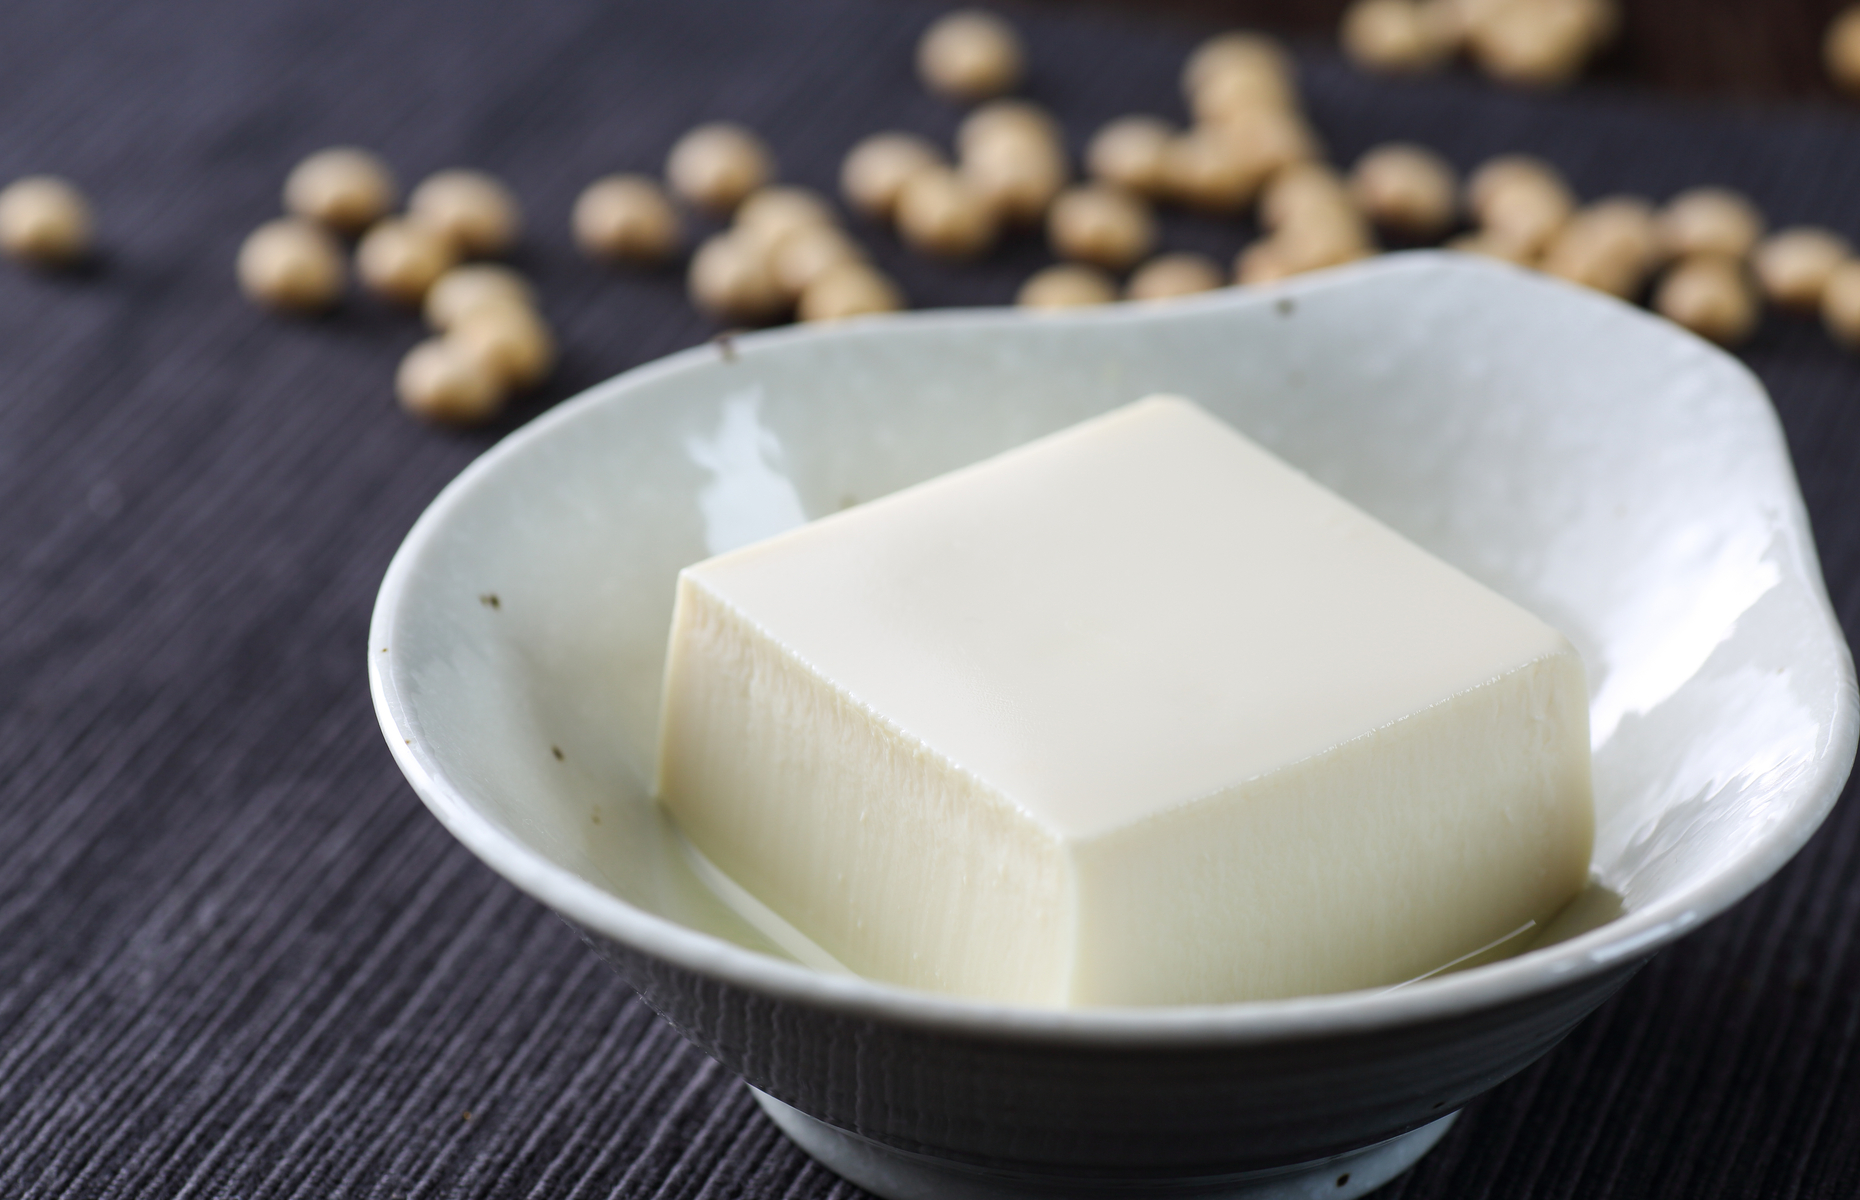 Soft tofu (Image: taa22/Shutterstock)